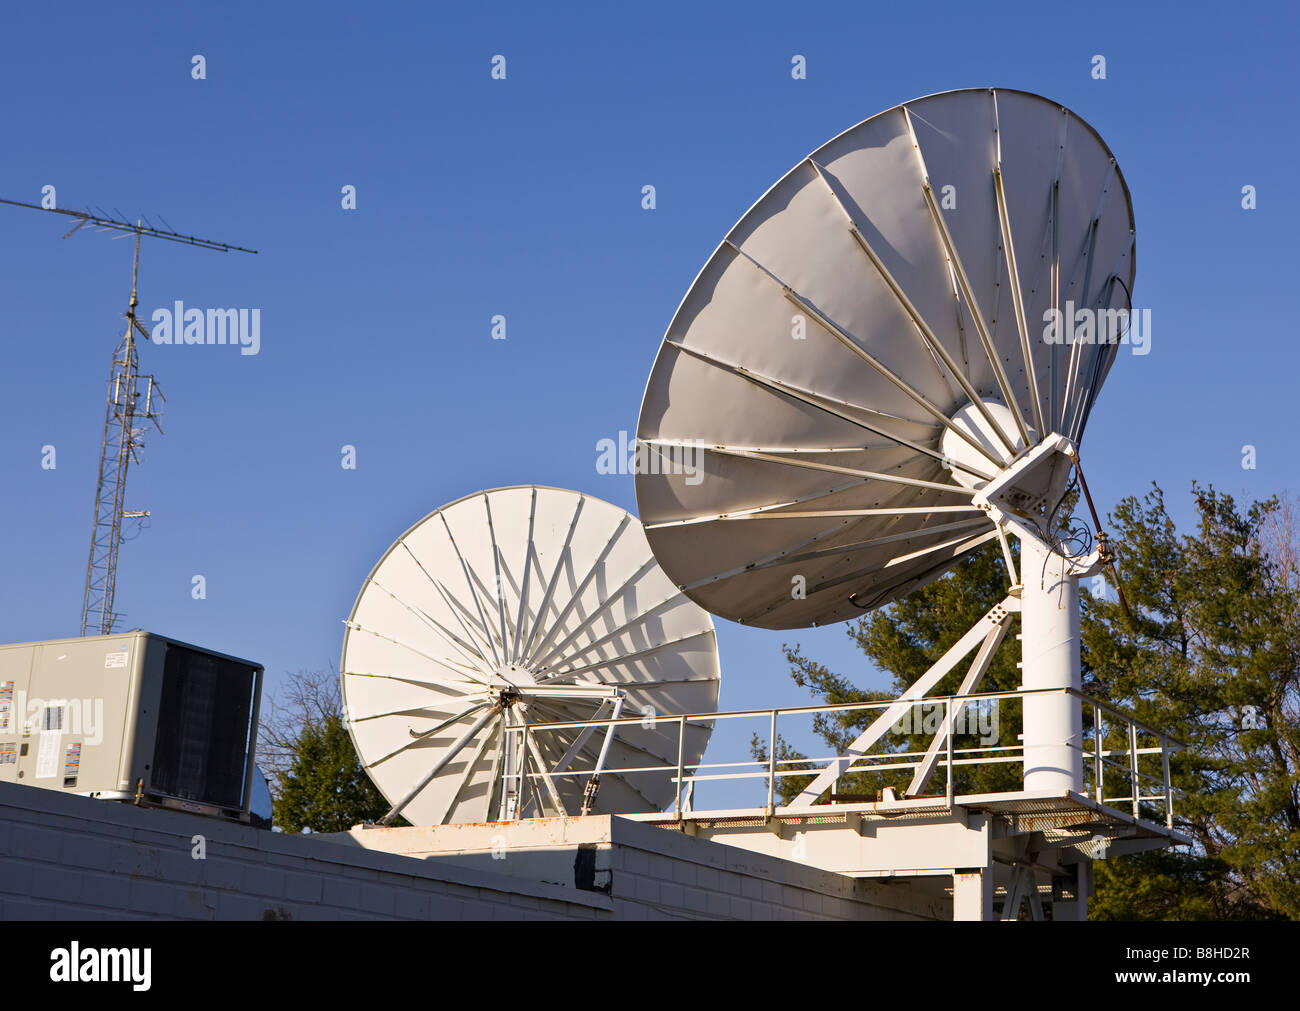 ARLINGTON VIRGINIA USA antenne satellite pour la télévision par câble sur le toit Banque D'Images